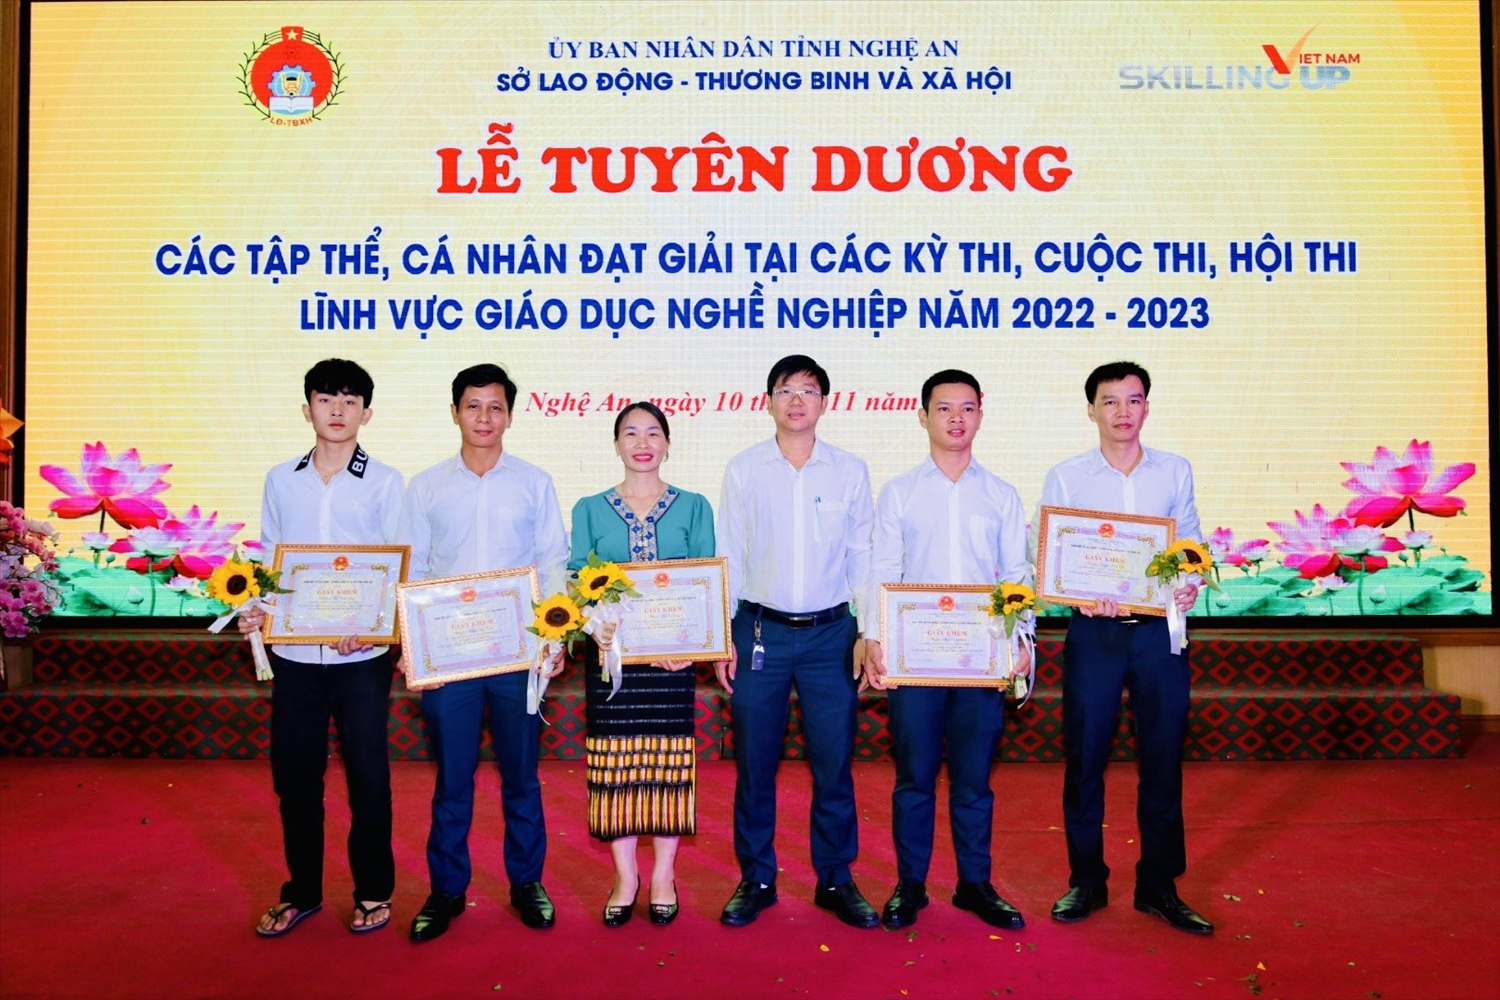 Trường trung cấp dân tộc nội trú Nghệ An có ý tưởng đạt giải tại hộ thi lĩnh vực giáo dục nghề nghiệp do tỉnh Nghệ An tổ chức